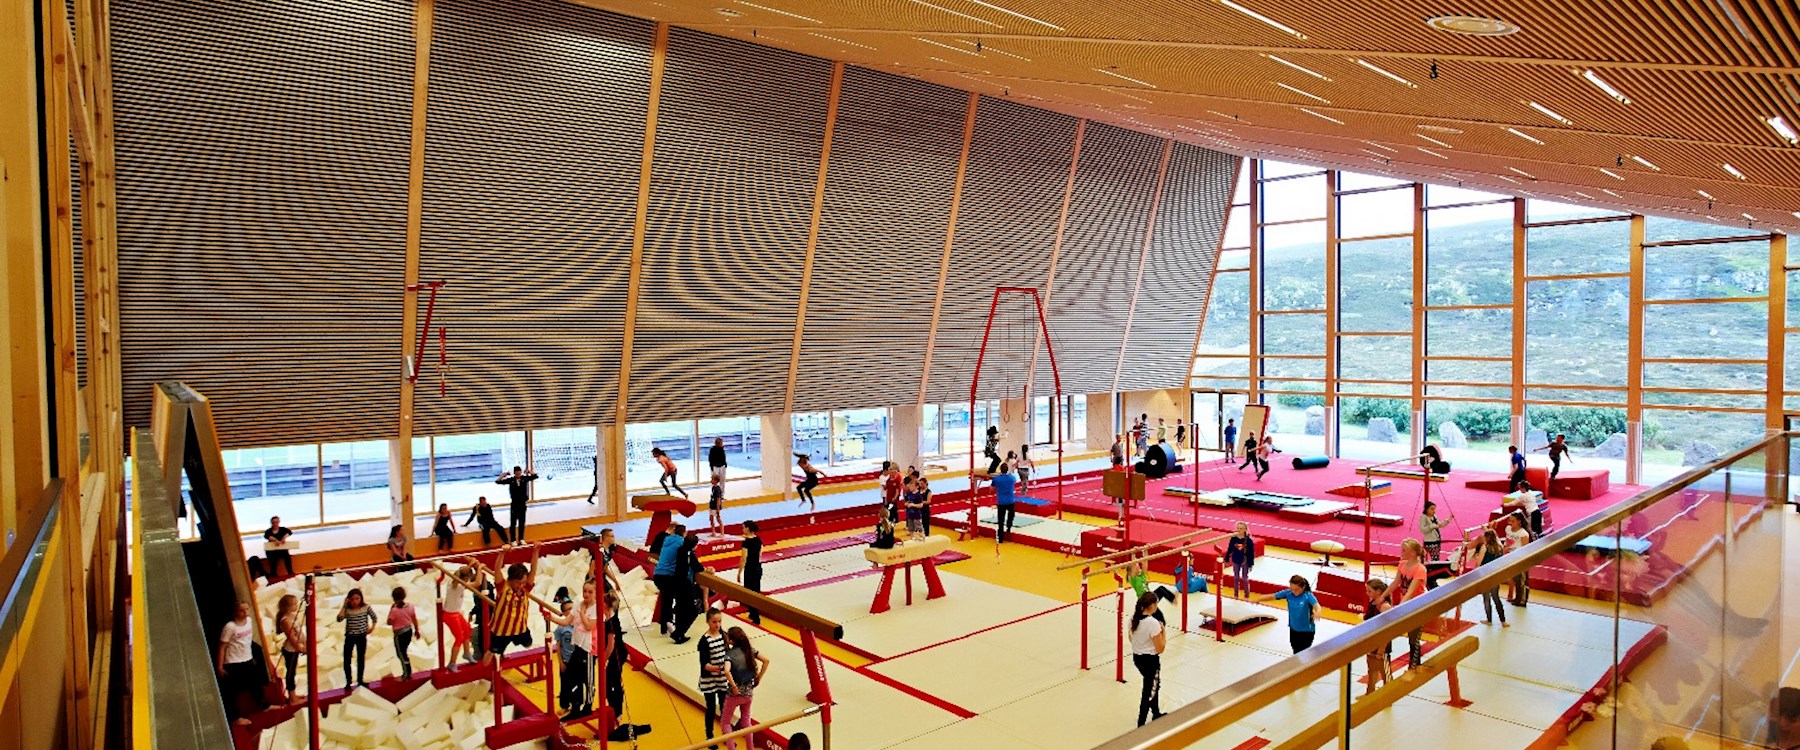 2014-08-gymnastichall_runavik_interior-16